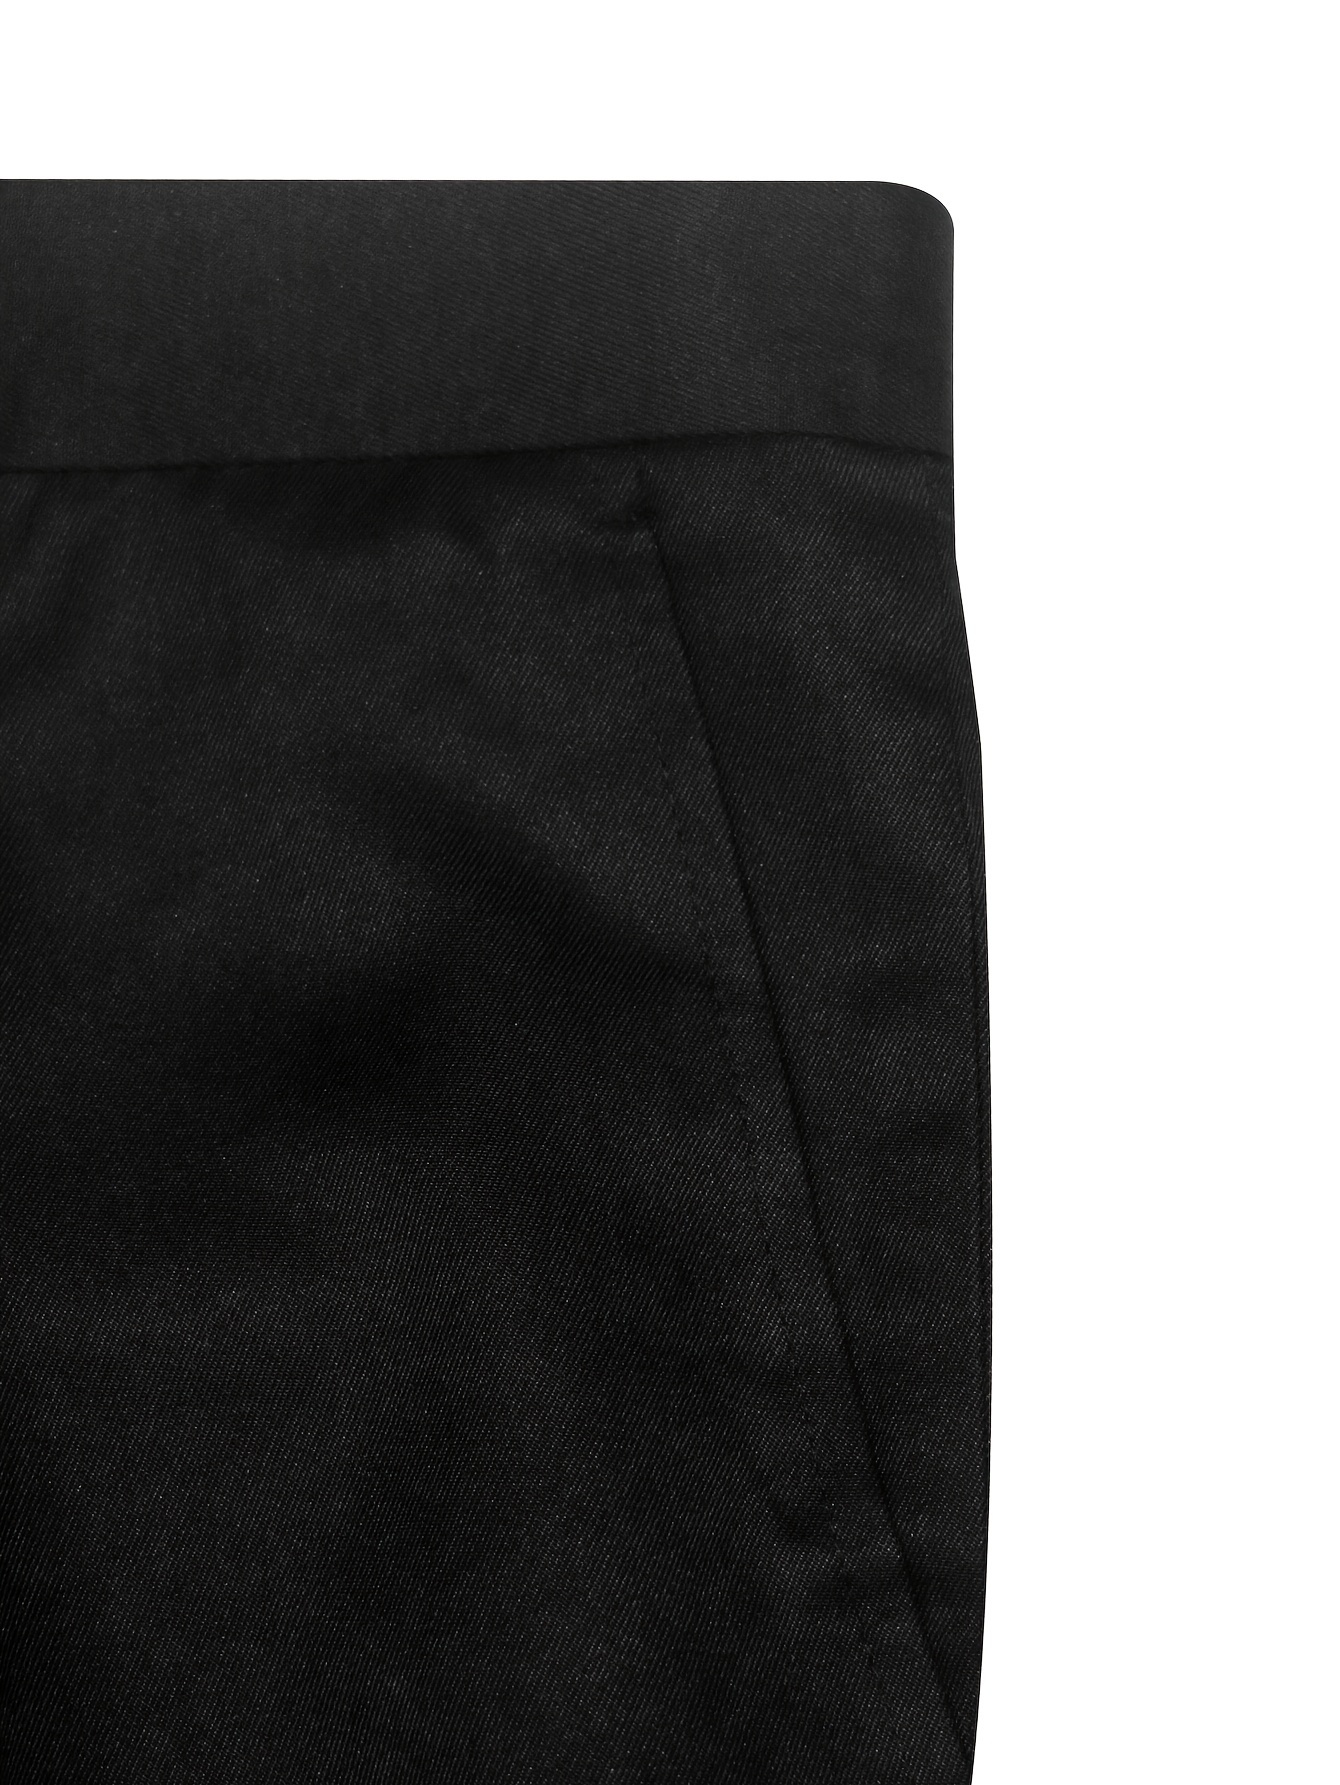 2 Parça Erkek Resmi Giyim Takımı, Erkek Trendi Püsküllü Uzun Kollu İki Düğmeli Klasik Yaka Ceket Cep Detaylı & Dar Kesim Pantolon Takımı, Düğün Yemeği, Parti Kostümü